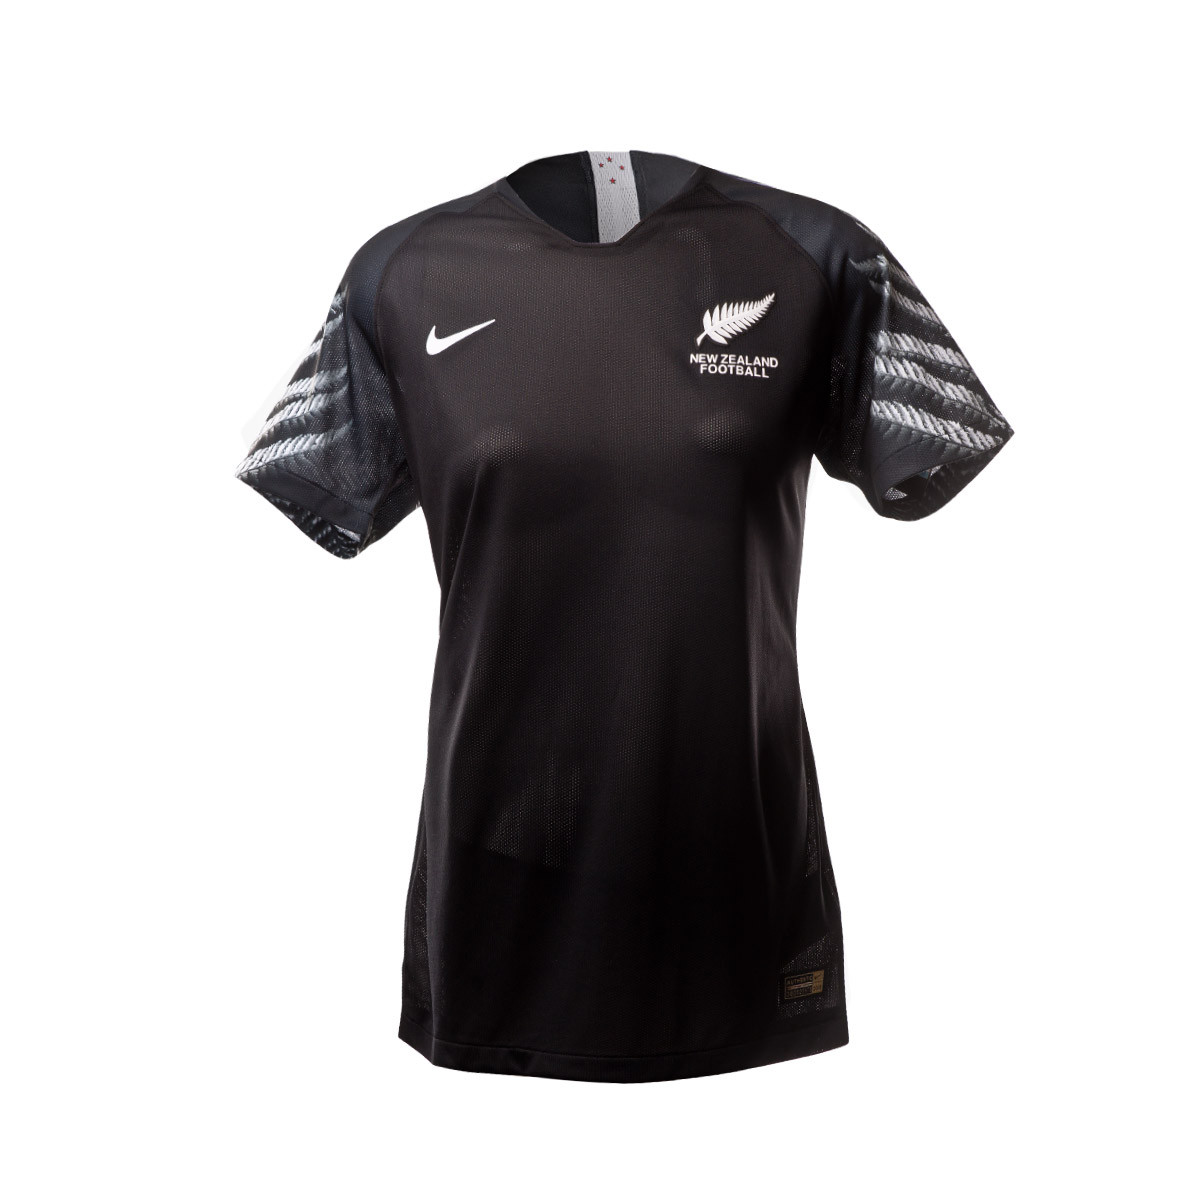 Jersey Nike Selección Nueva Zelanda Segunda Equipación 2019-2020 Mujer  Black-Purple - Football store Fútbol Emotion